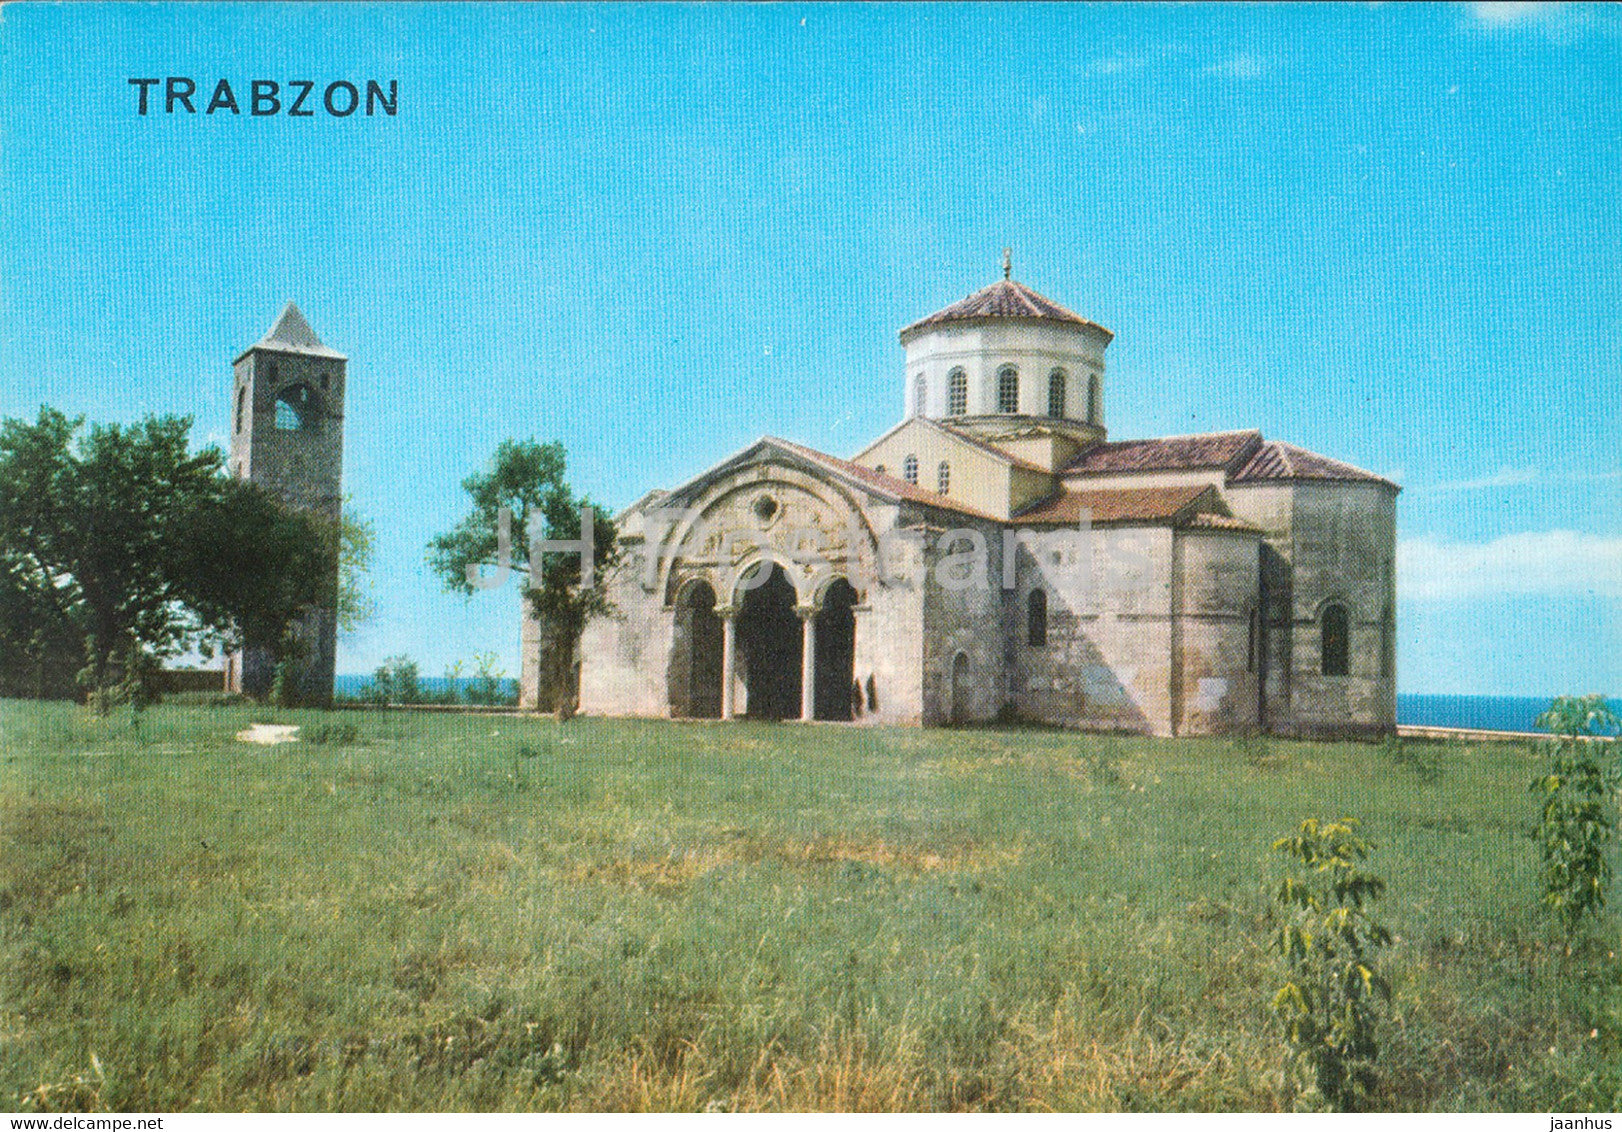 Trabzon - Hagia Sophia Museum - 1 - 1987 - Turkey - used - JH Postcards